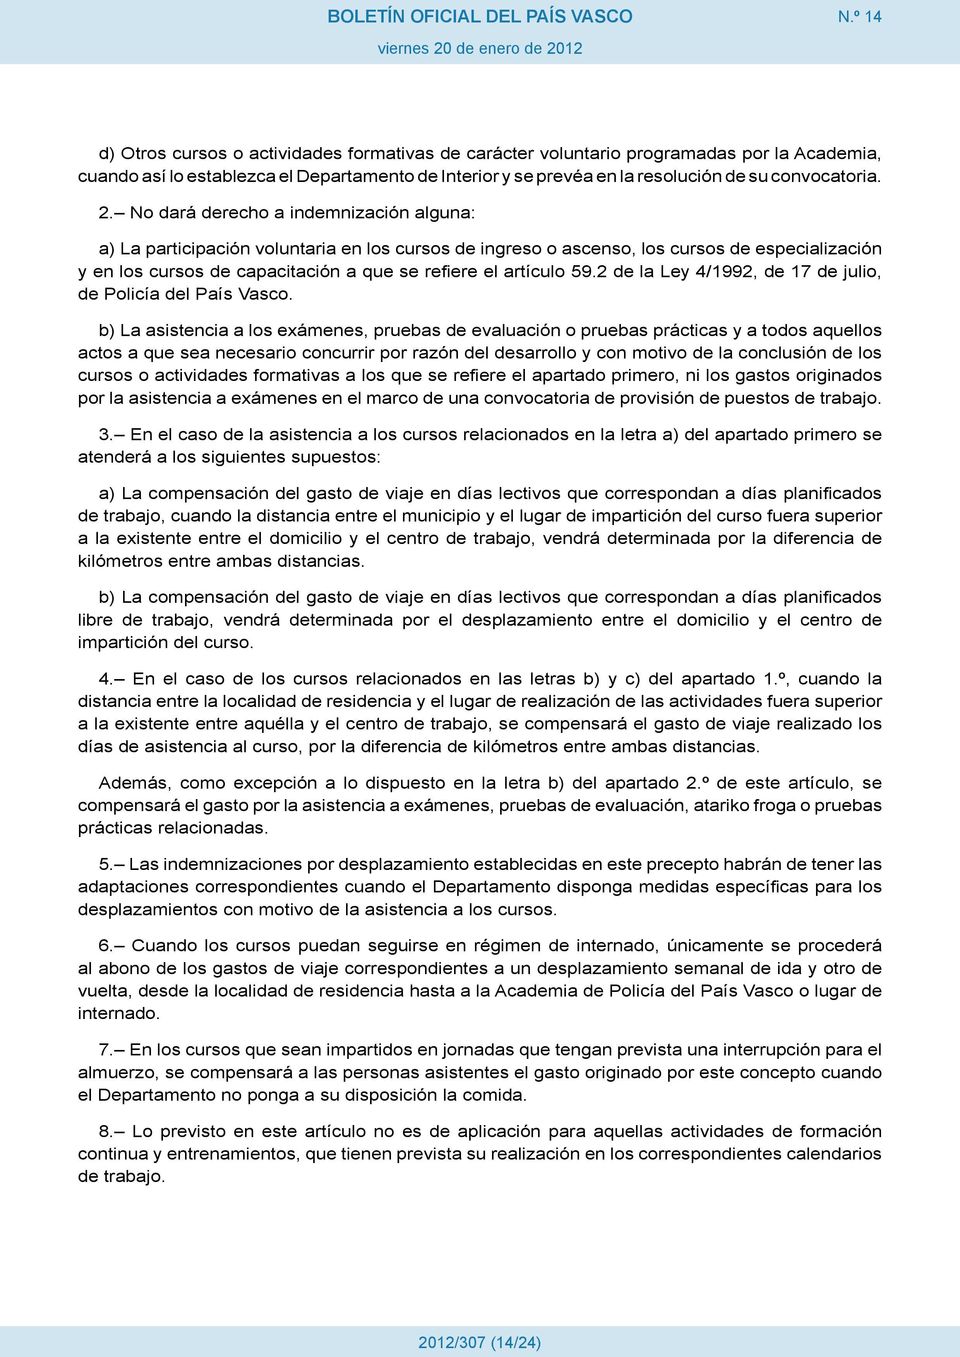 59.2 de la Ley 4/1992, de 17 de julio, de Policía del País Vasco.